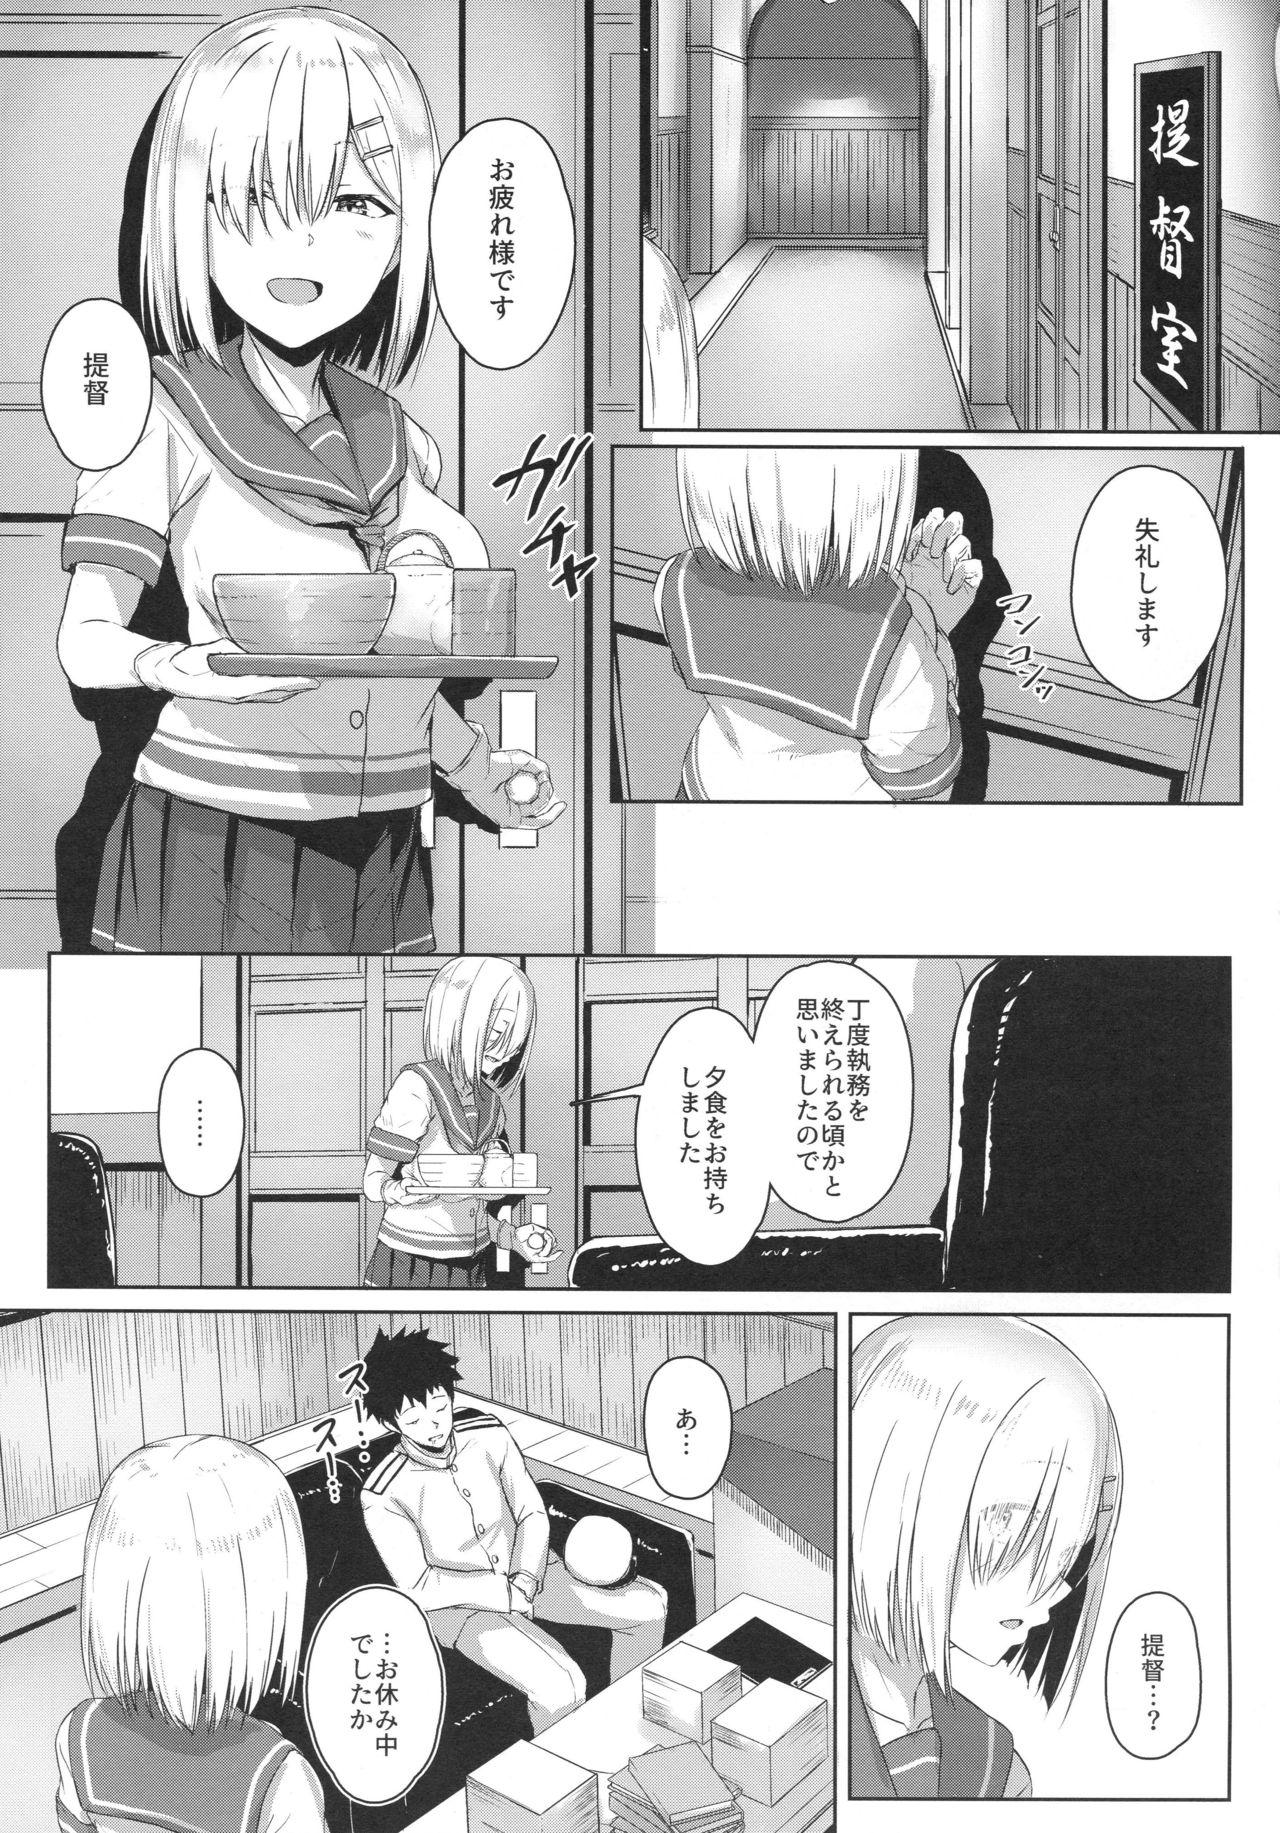 Teen Blowjob Hamakaze Biyori 3 - Kantai collection Boobies - Page 2